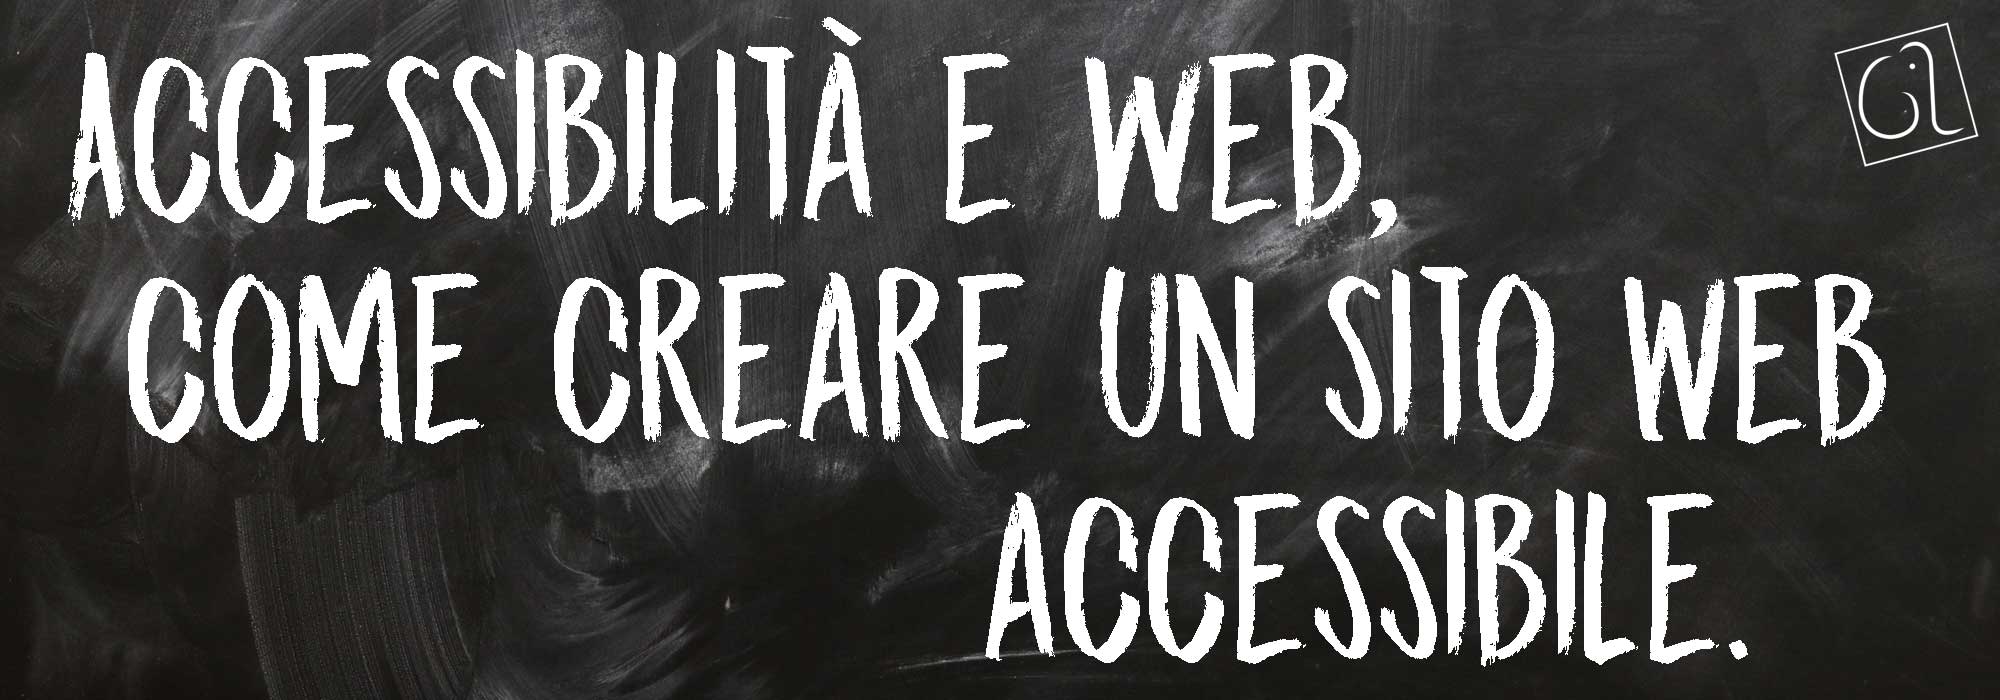 Accessibilità e Web, come creare un sito accessibile.